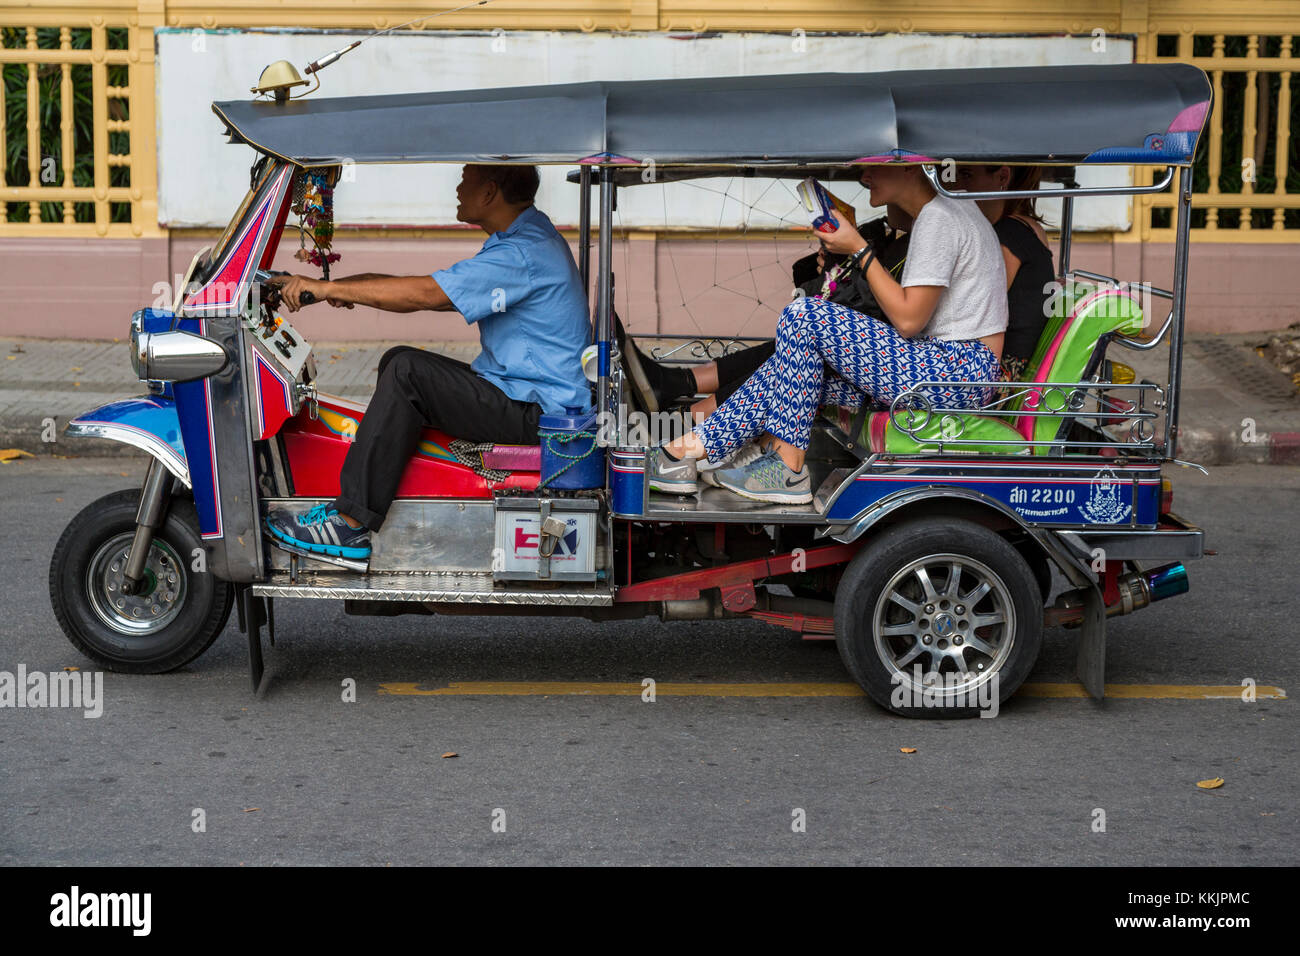 Bangkok, Thaïlande. Passagers dans un tuk-tuk, une motocyclette à trois roues Taxi. Banque D'Images